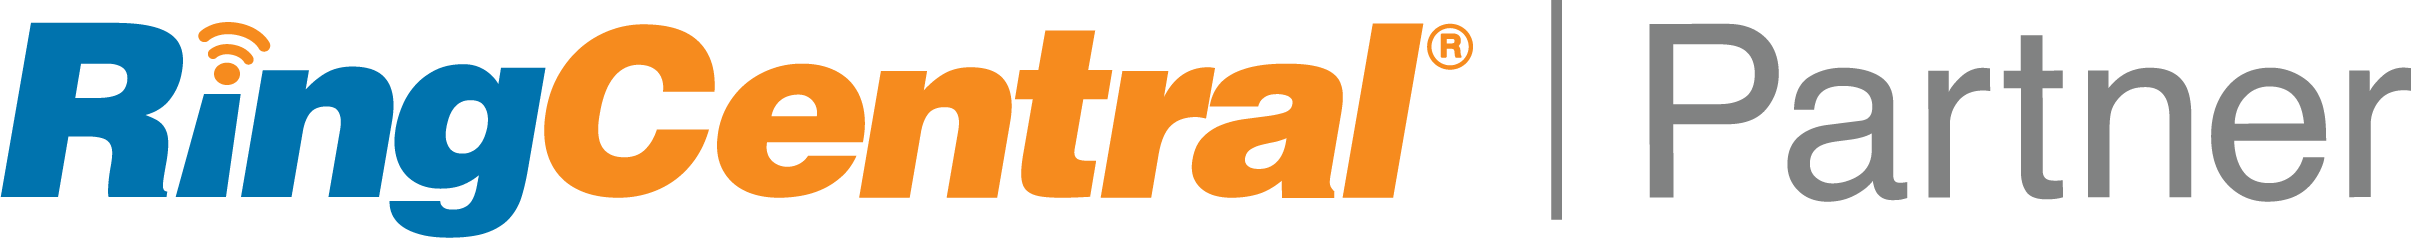 ringcentral-partner-logo